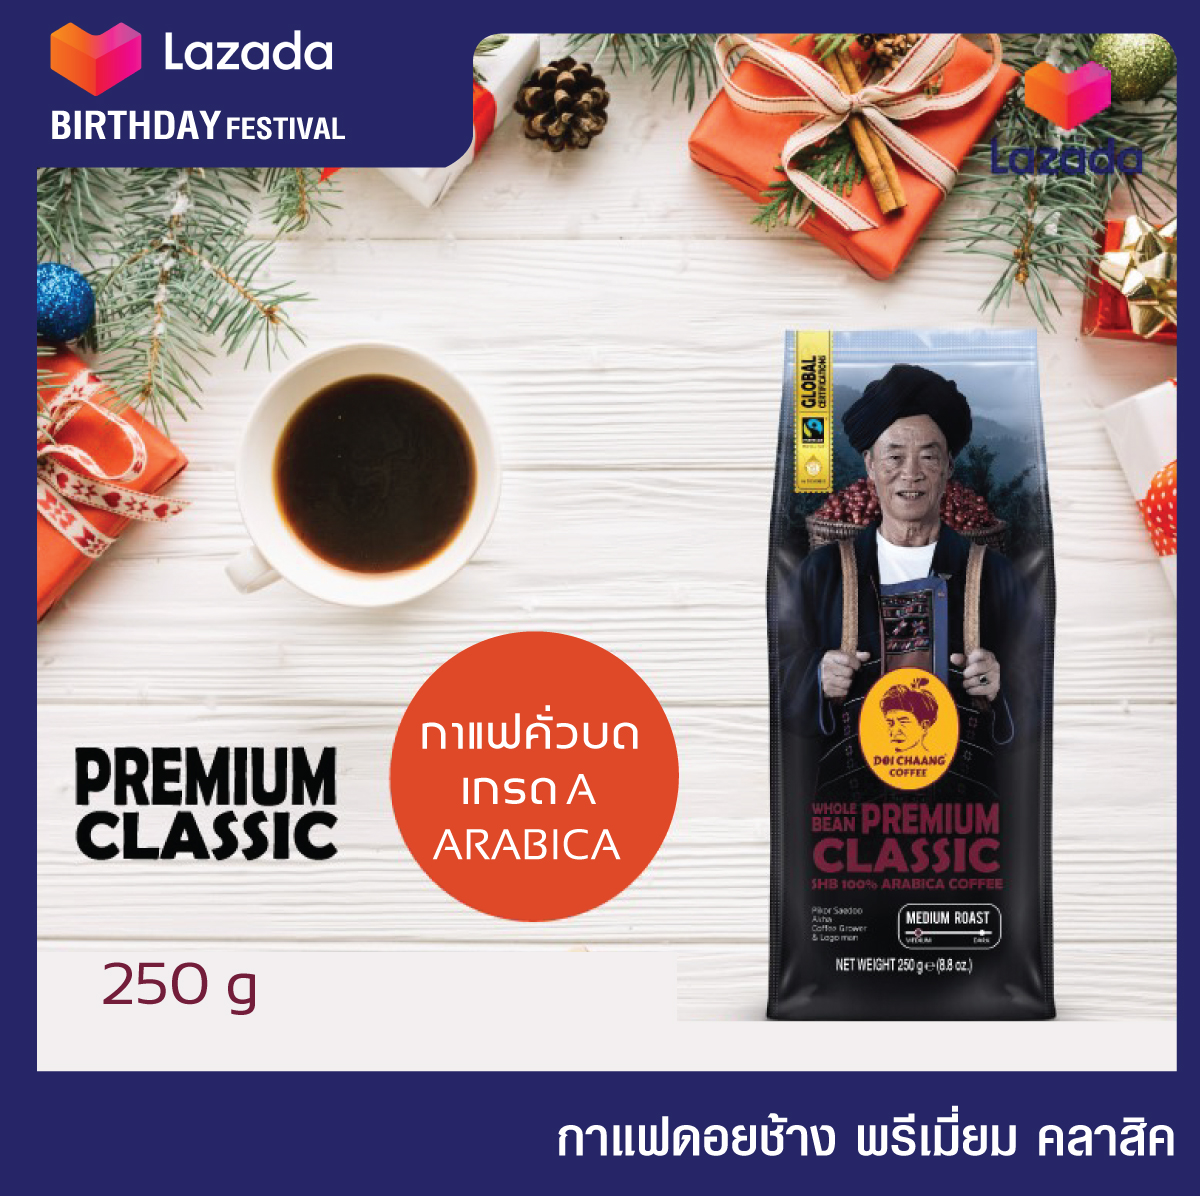 กาแฟดอยช้าง -Premium Classic   กาแฟคั่วบด เมล็ดกาแฟเกรด A  คั่วกลาง ขนาด  250g. สามารถใช้ชงในหลายรูปแบบ